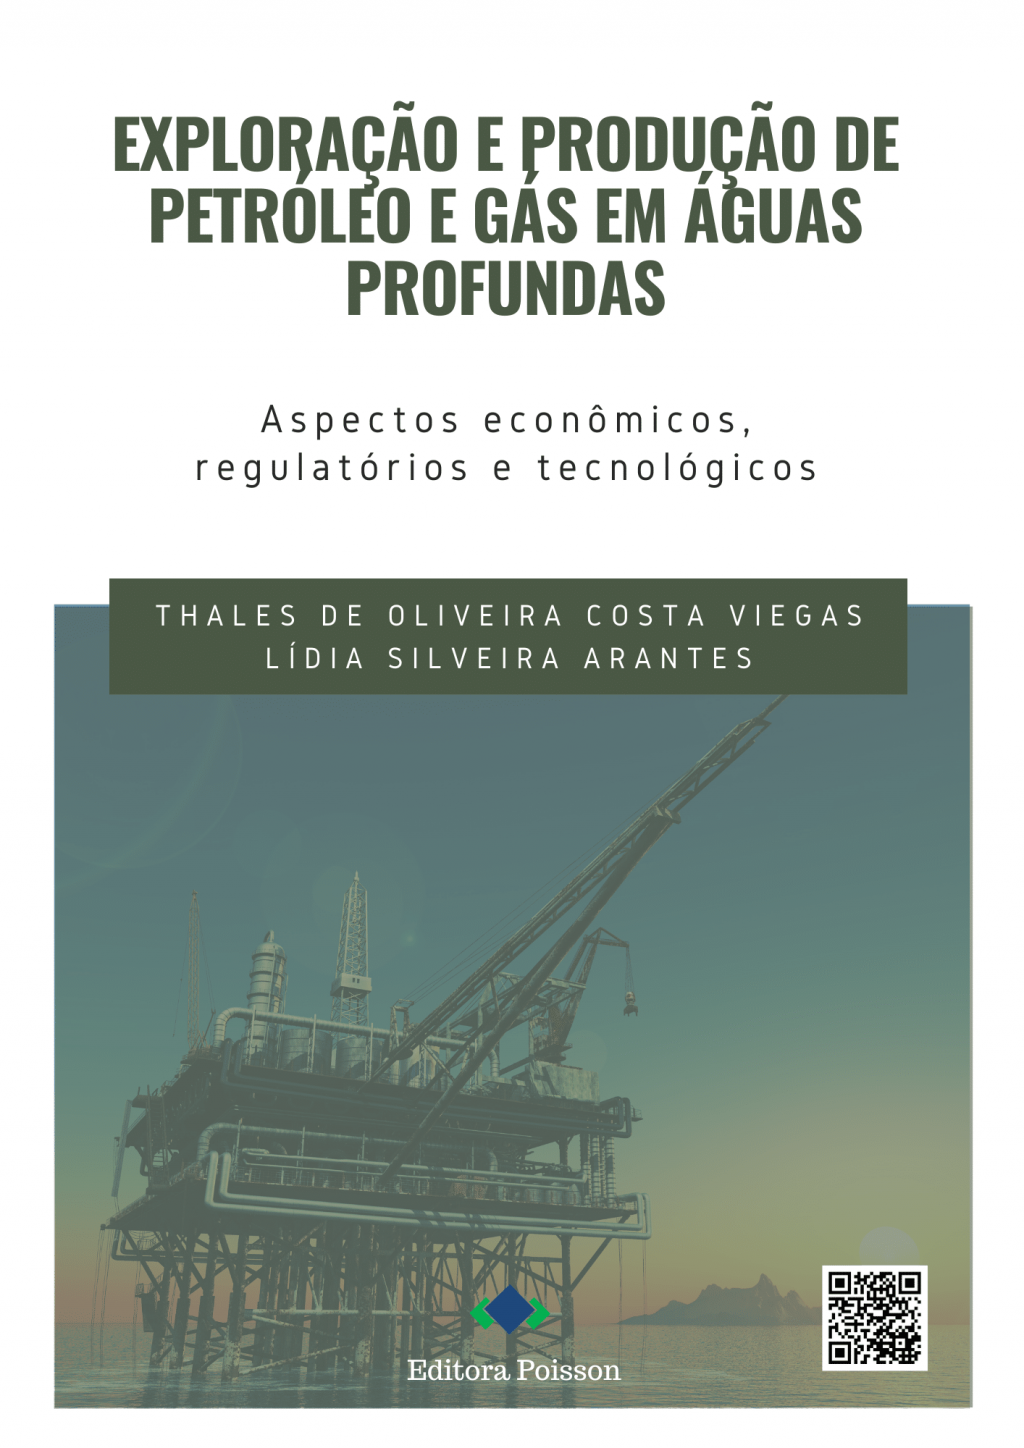 Exploração e Produção de Petróleo e Gás em águas profundas: Aspectos econômicos, regulatórios e tecnológicos